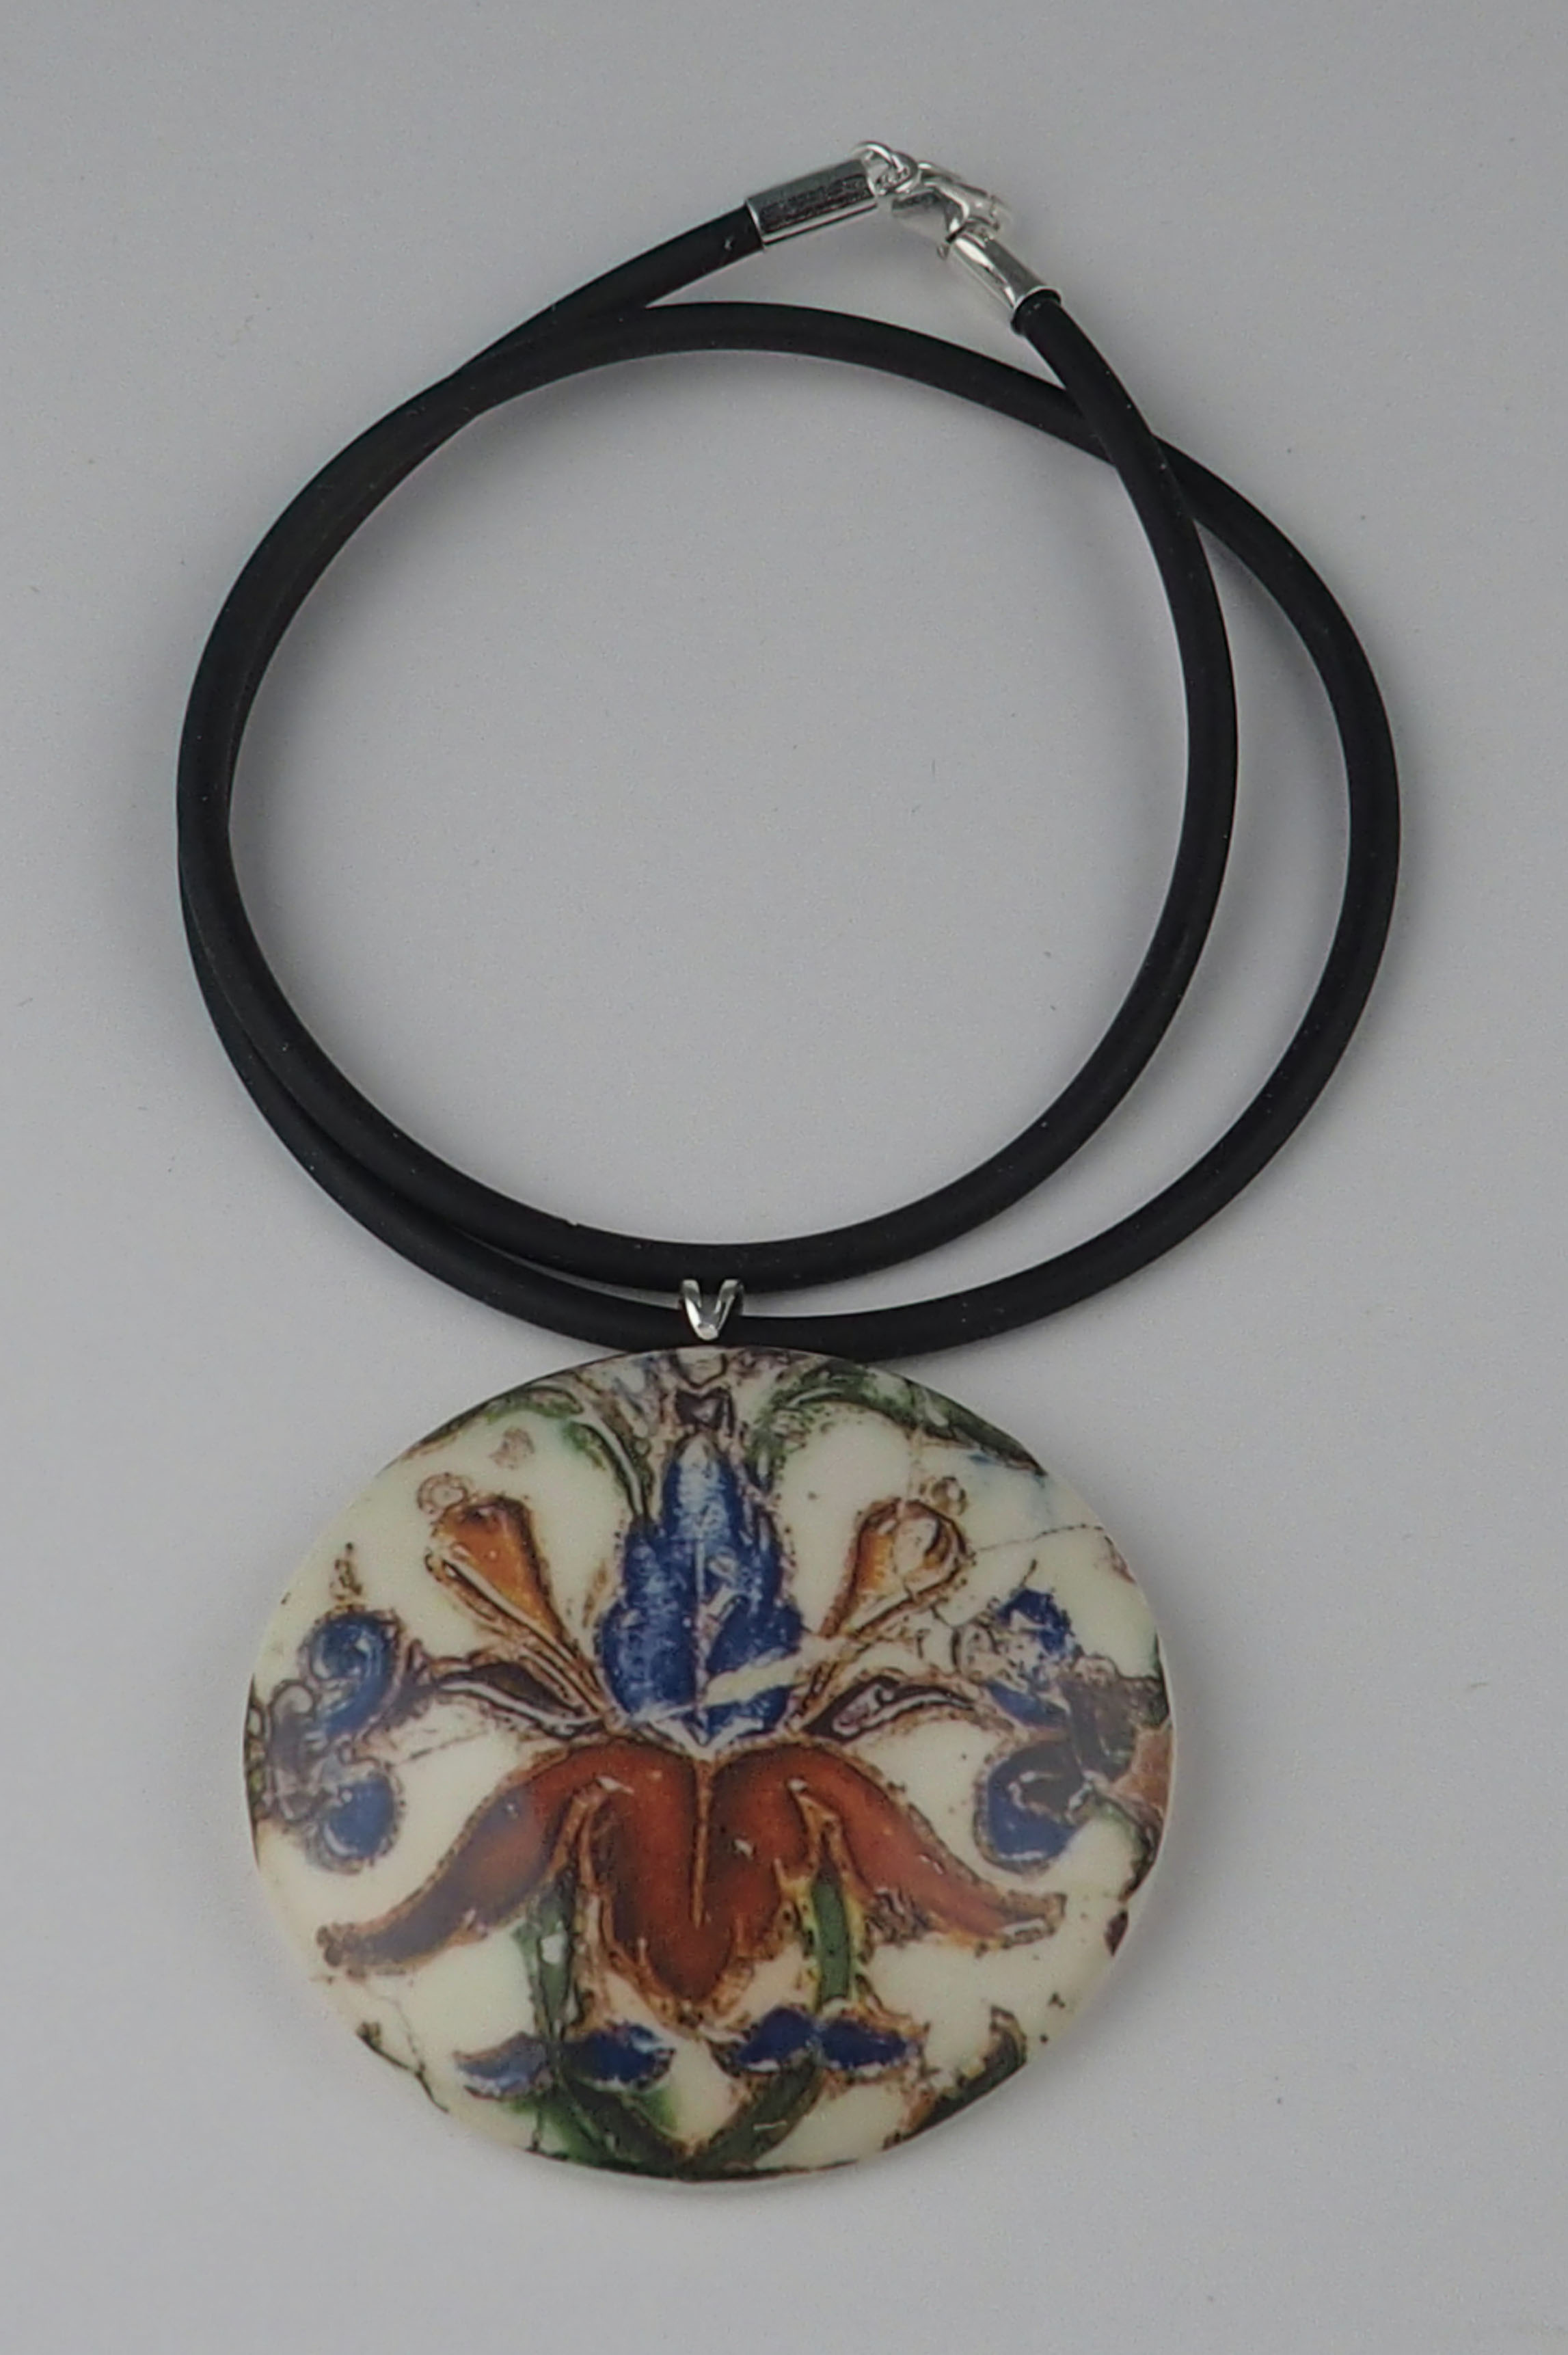 Seville Tiles pendant